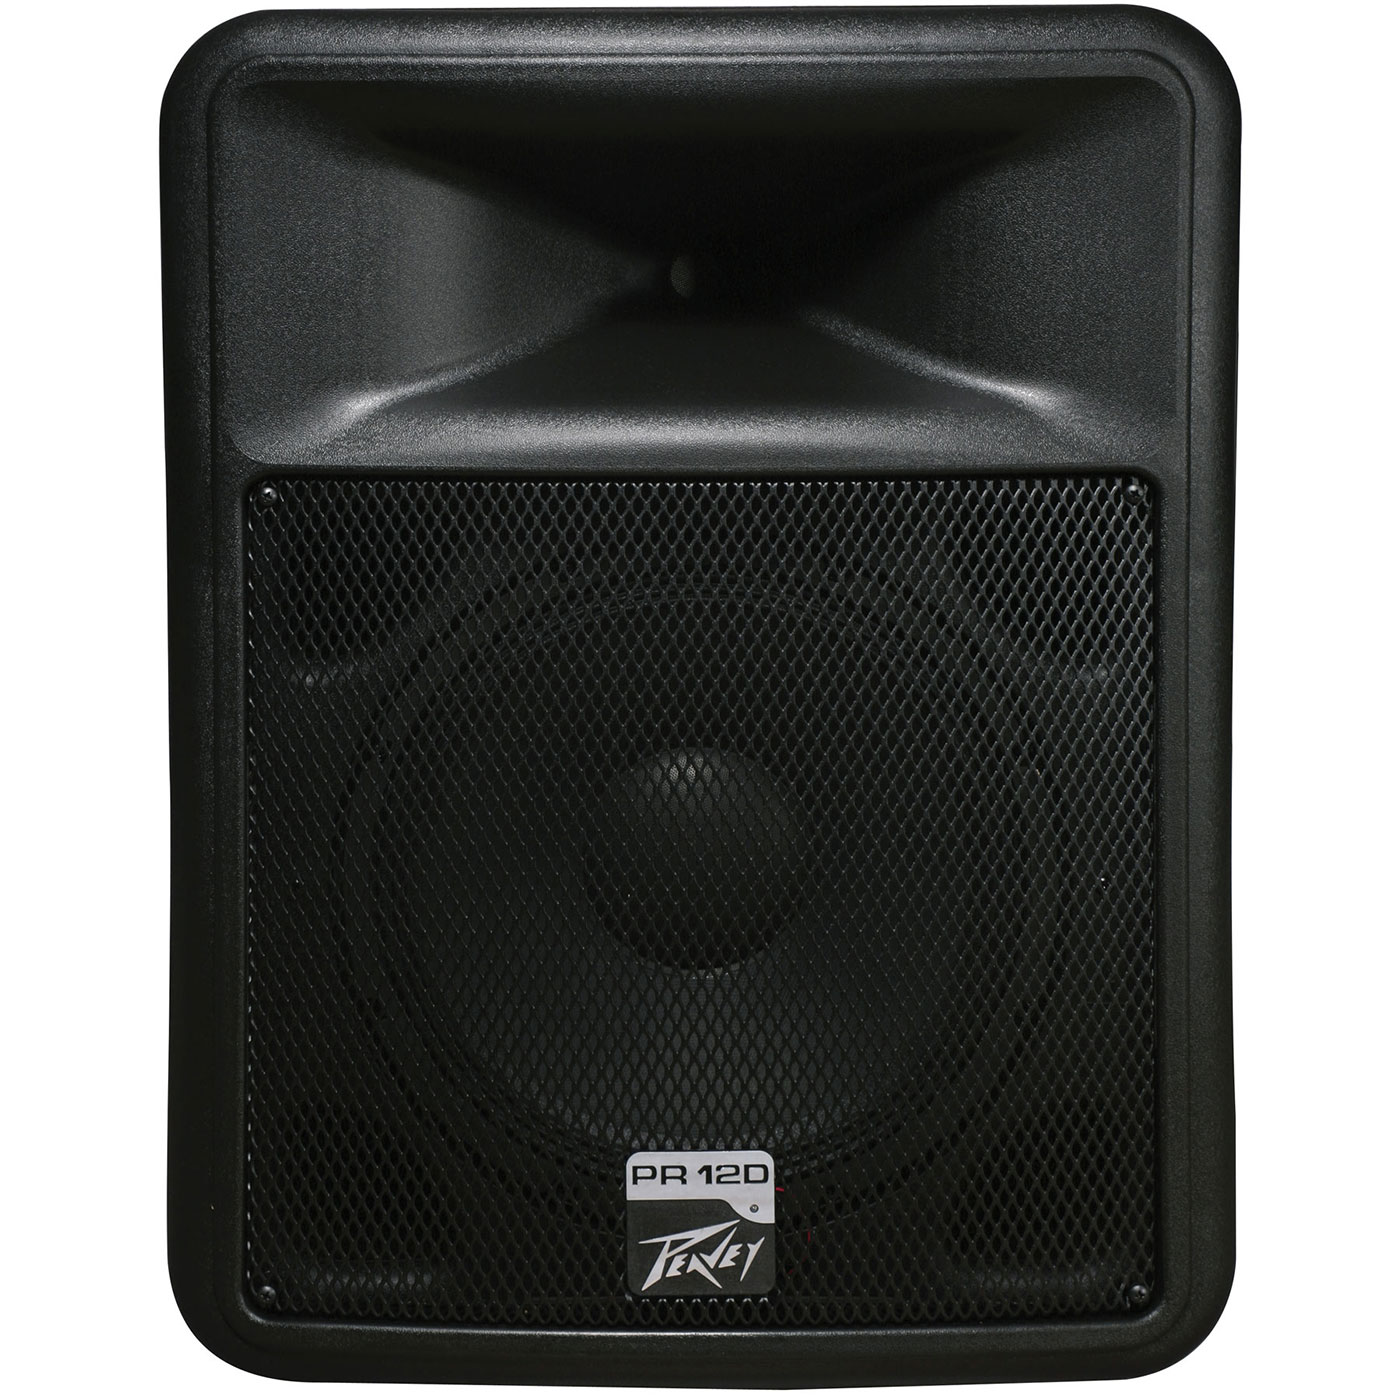 Peavey PR 12D Powered PA Speaker with Speaker Wall Mount eBay